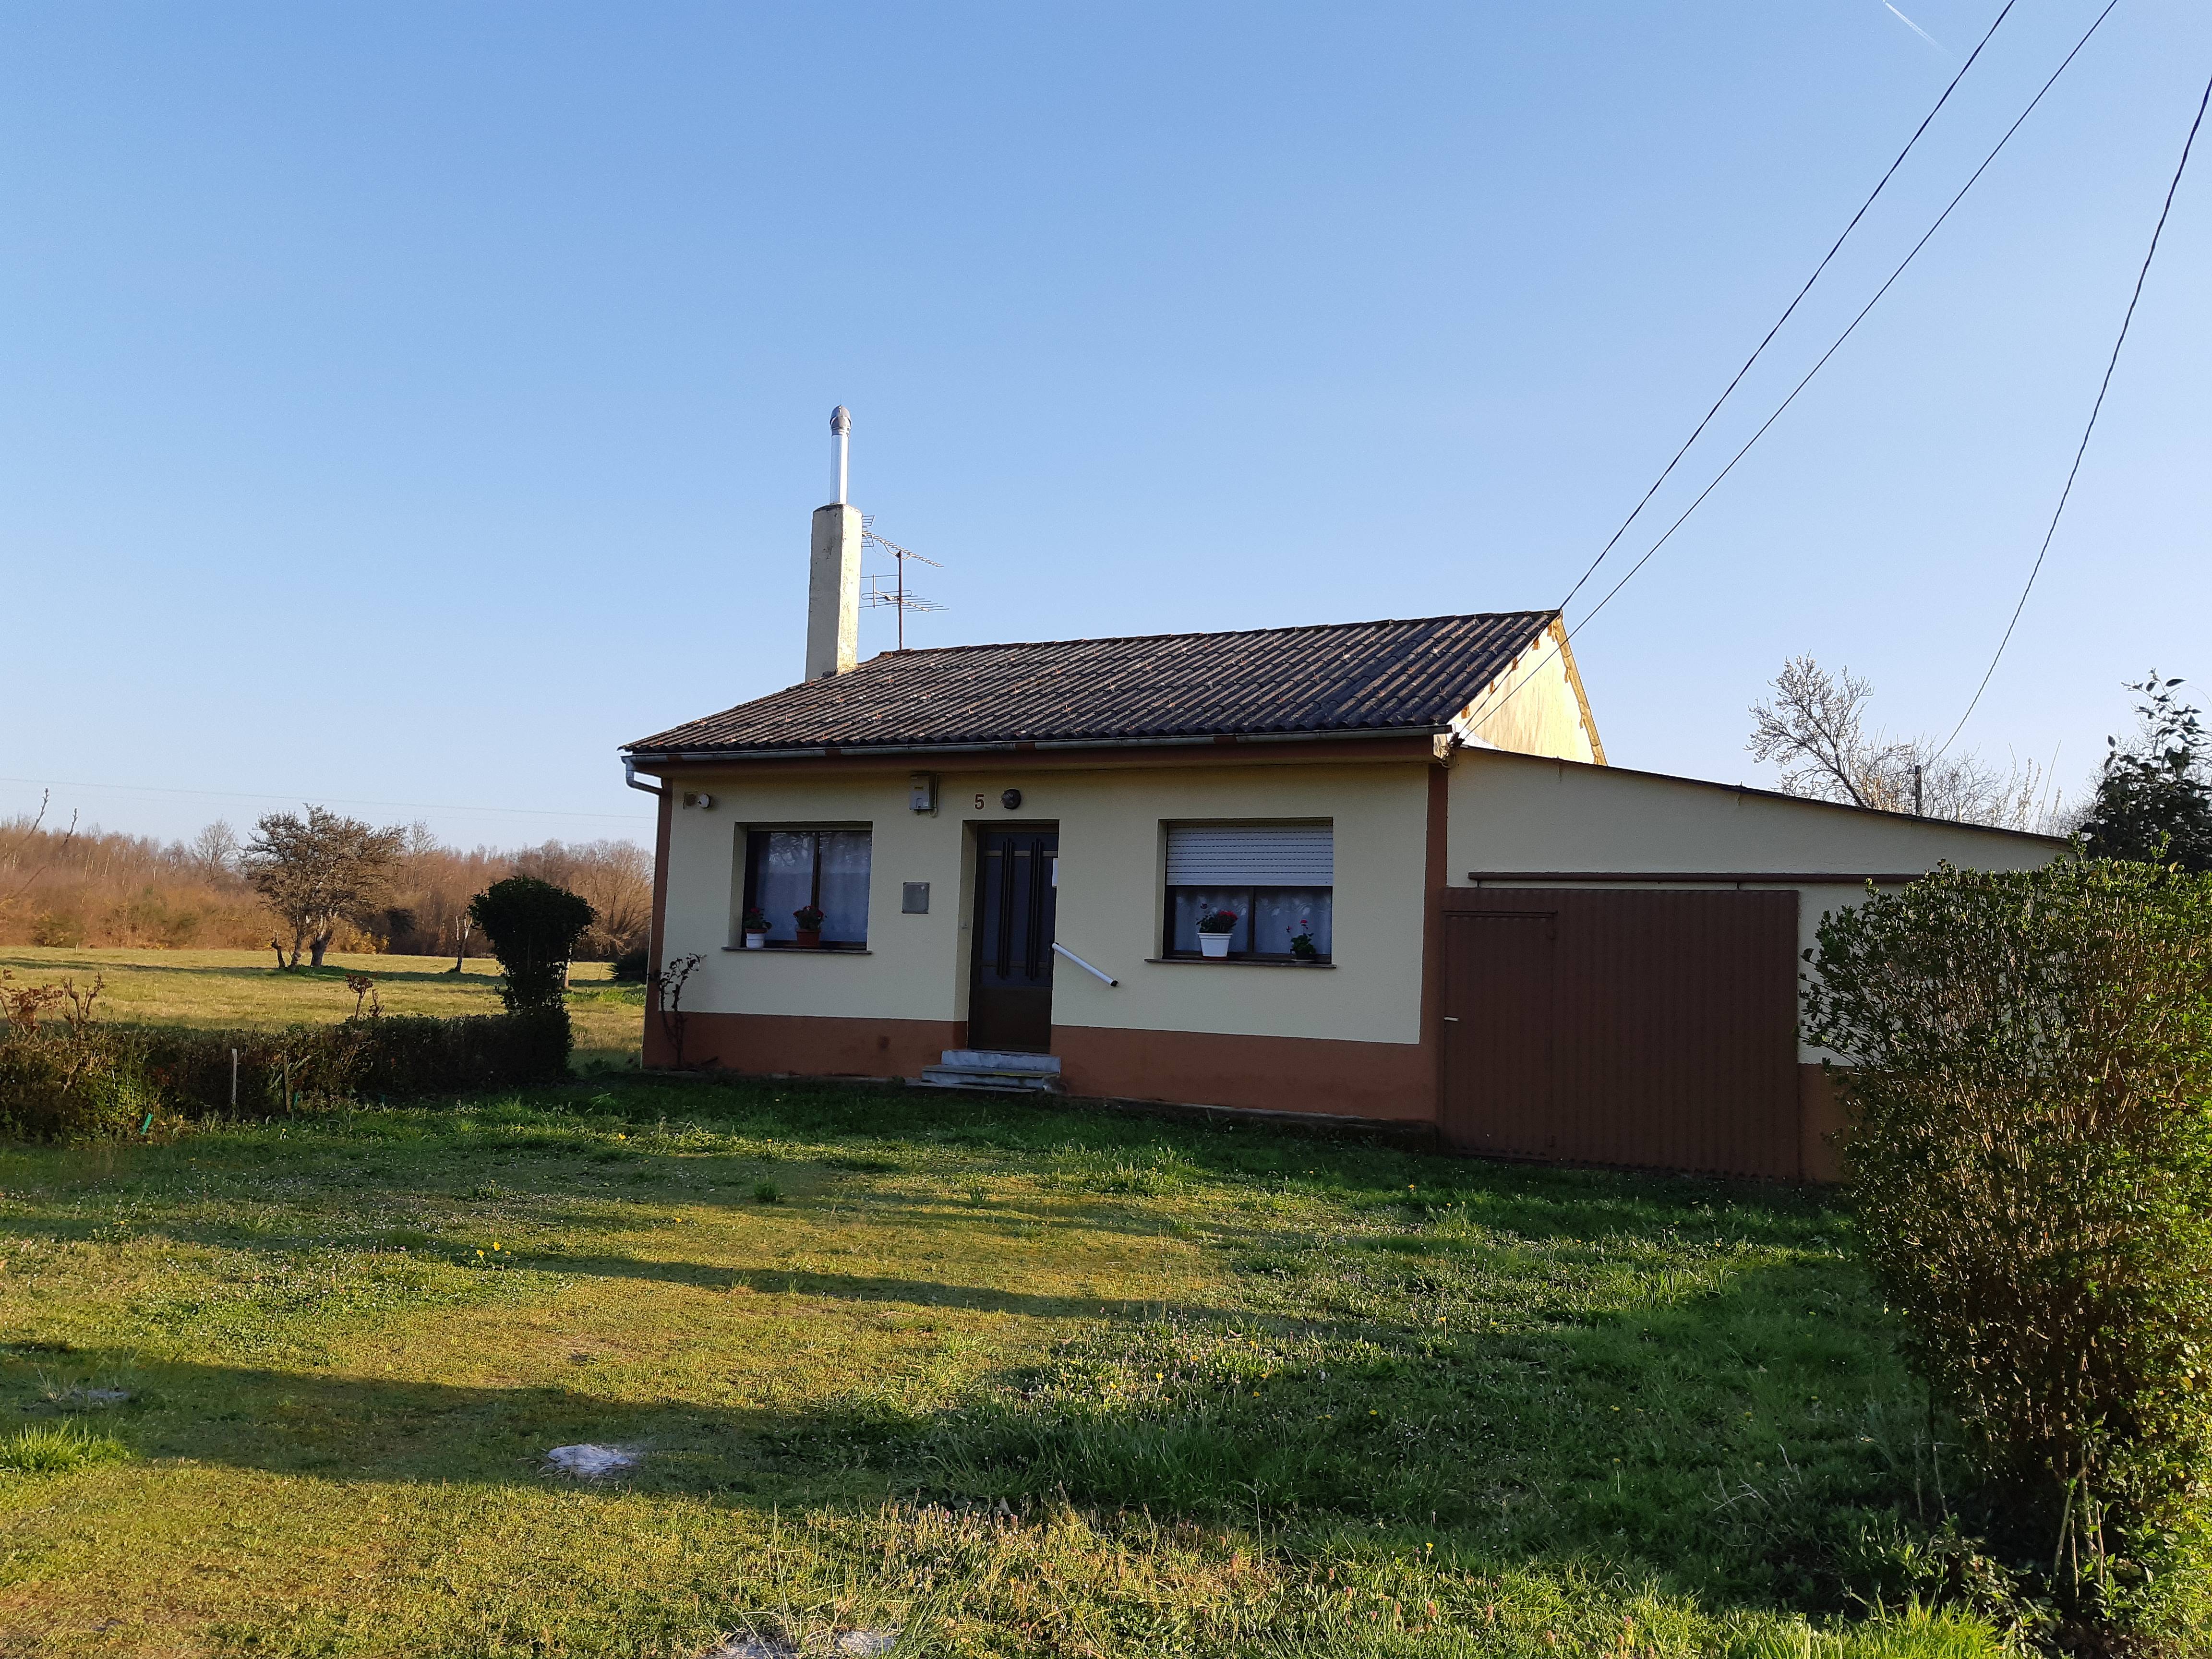 Alquiler de casas vacacionales en Lugo - Lugo rurales, chalets, bungalows